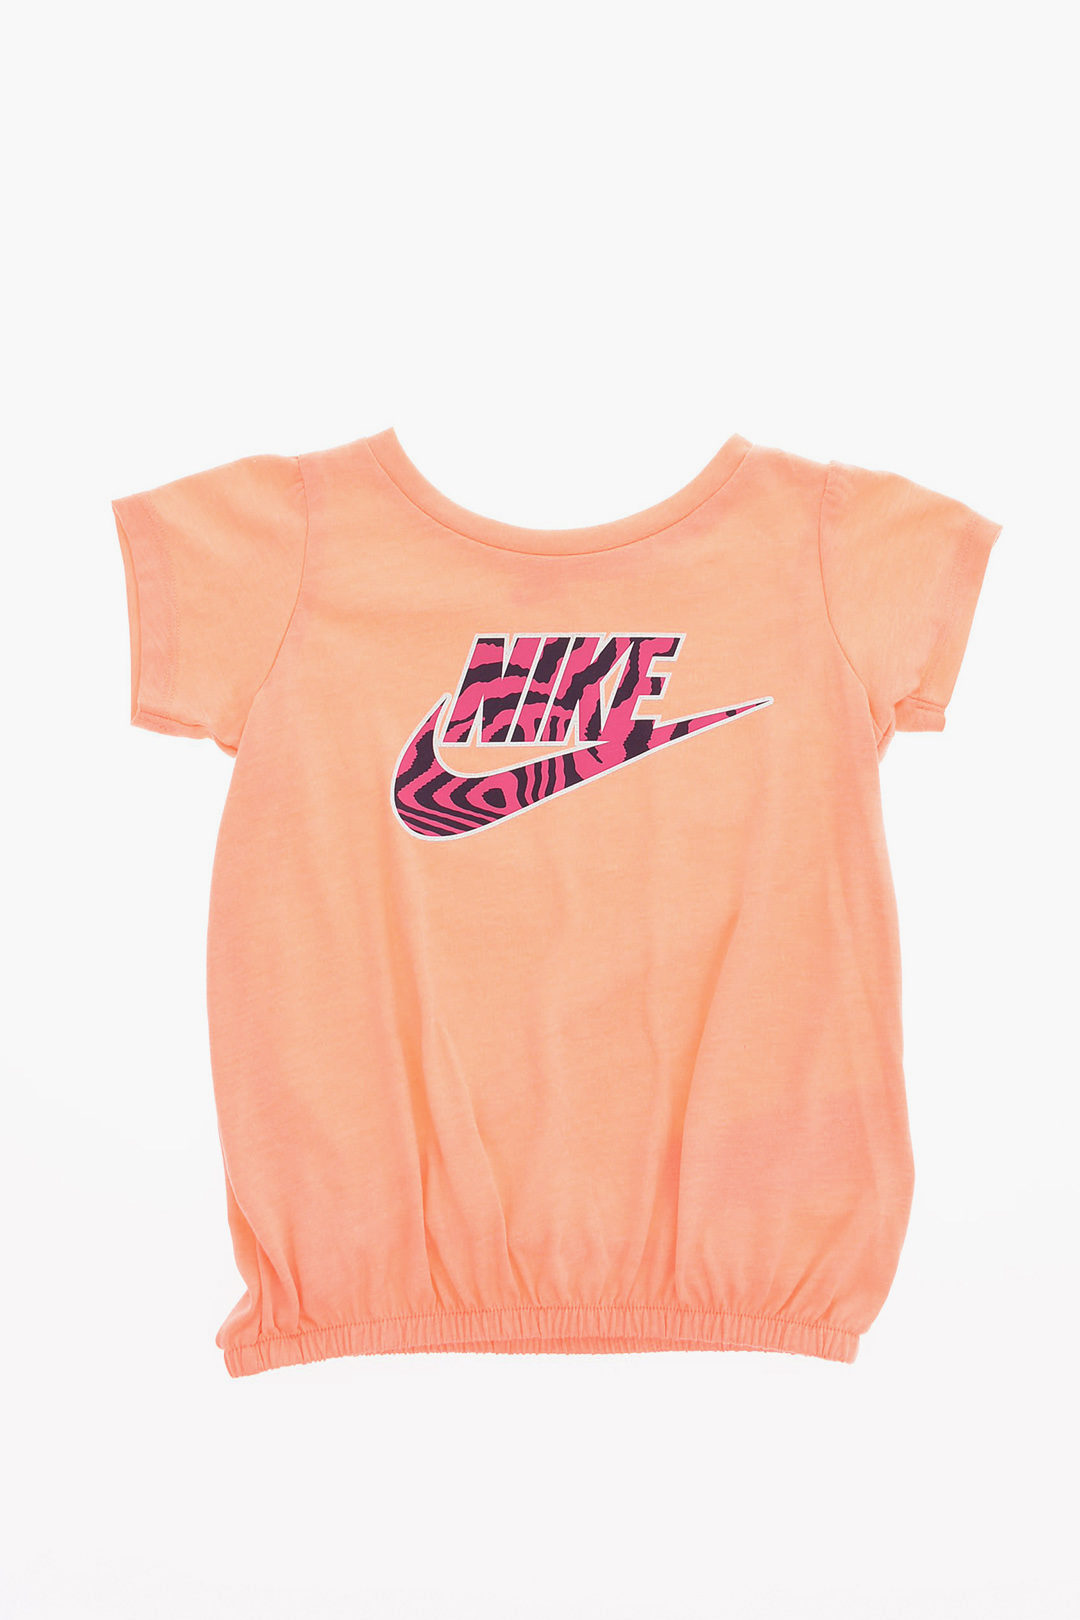 Nike Kids' Shirt - Orange